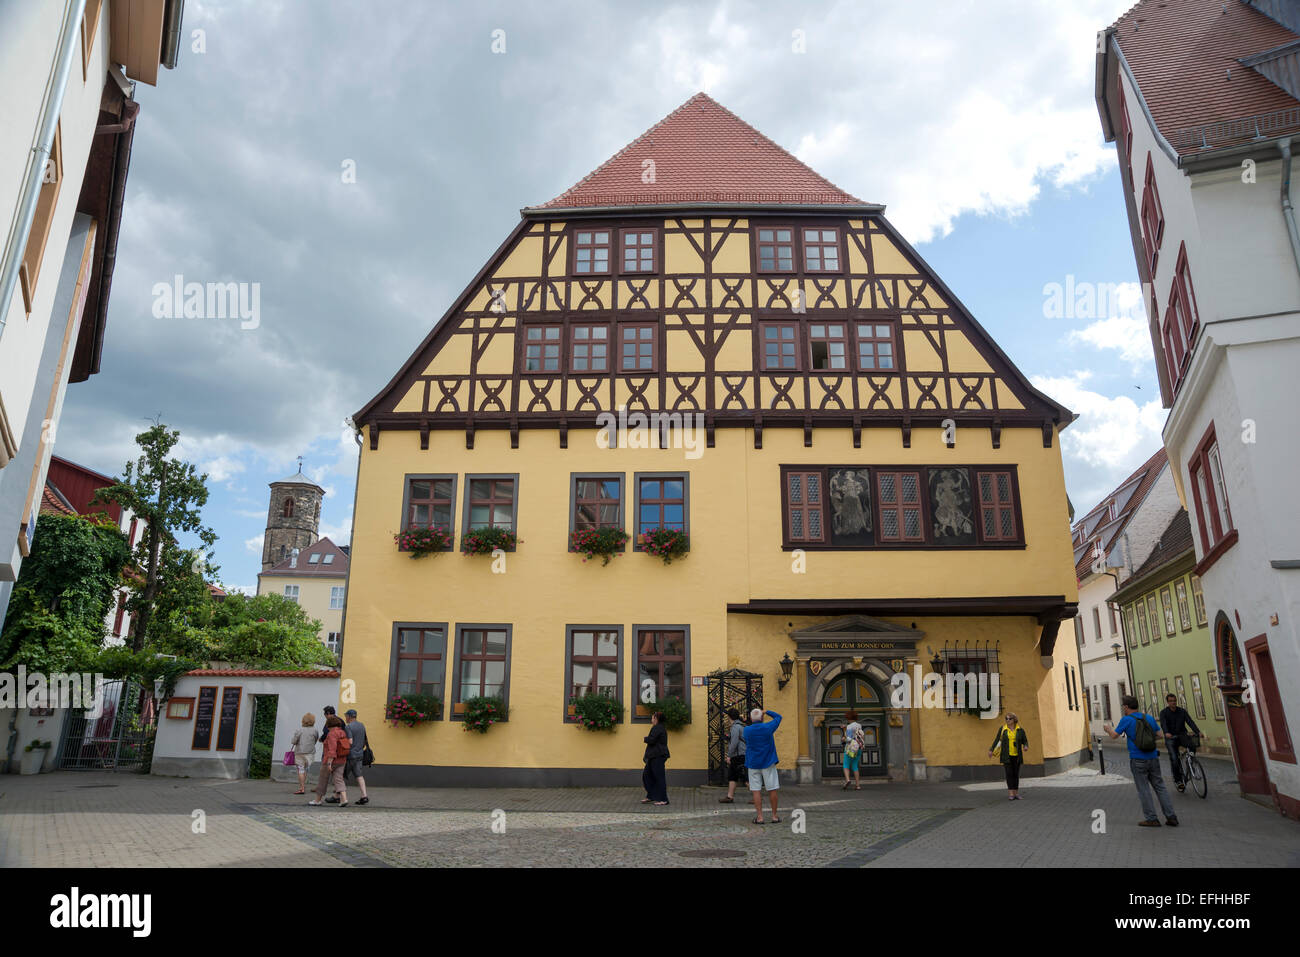 Haus zum Sonneborn- aujourd'hui, la maison et le bureau du registre de mariage, Erfurt, capitale de la Thuringe, Allemagne, Europe. Banque D'Images